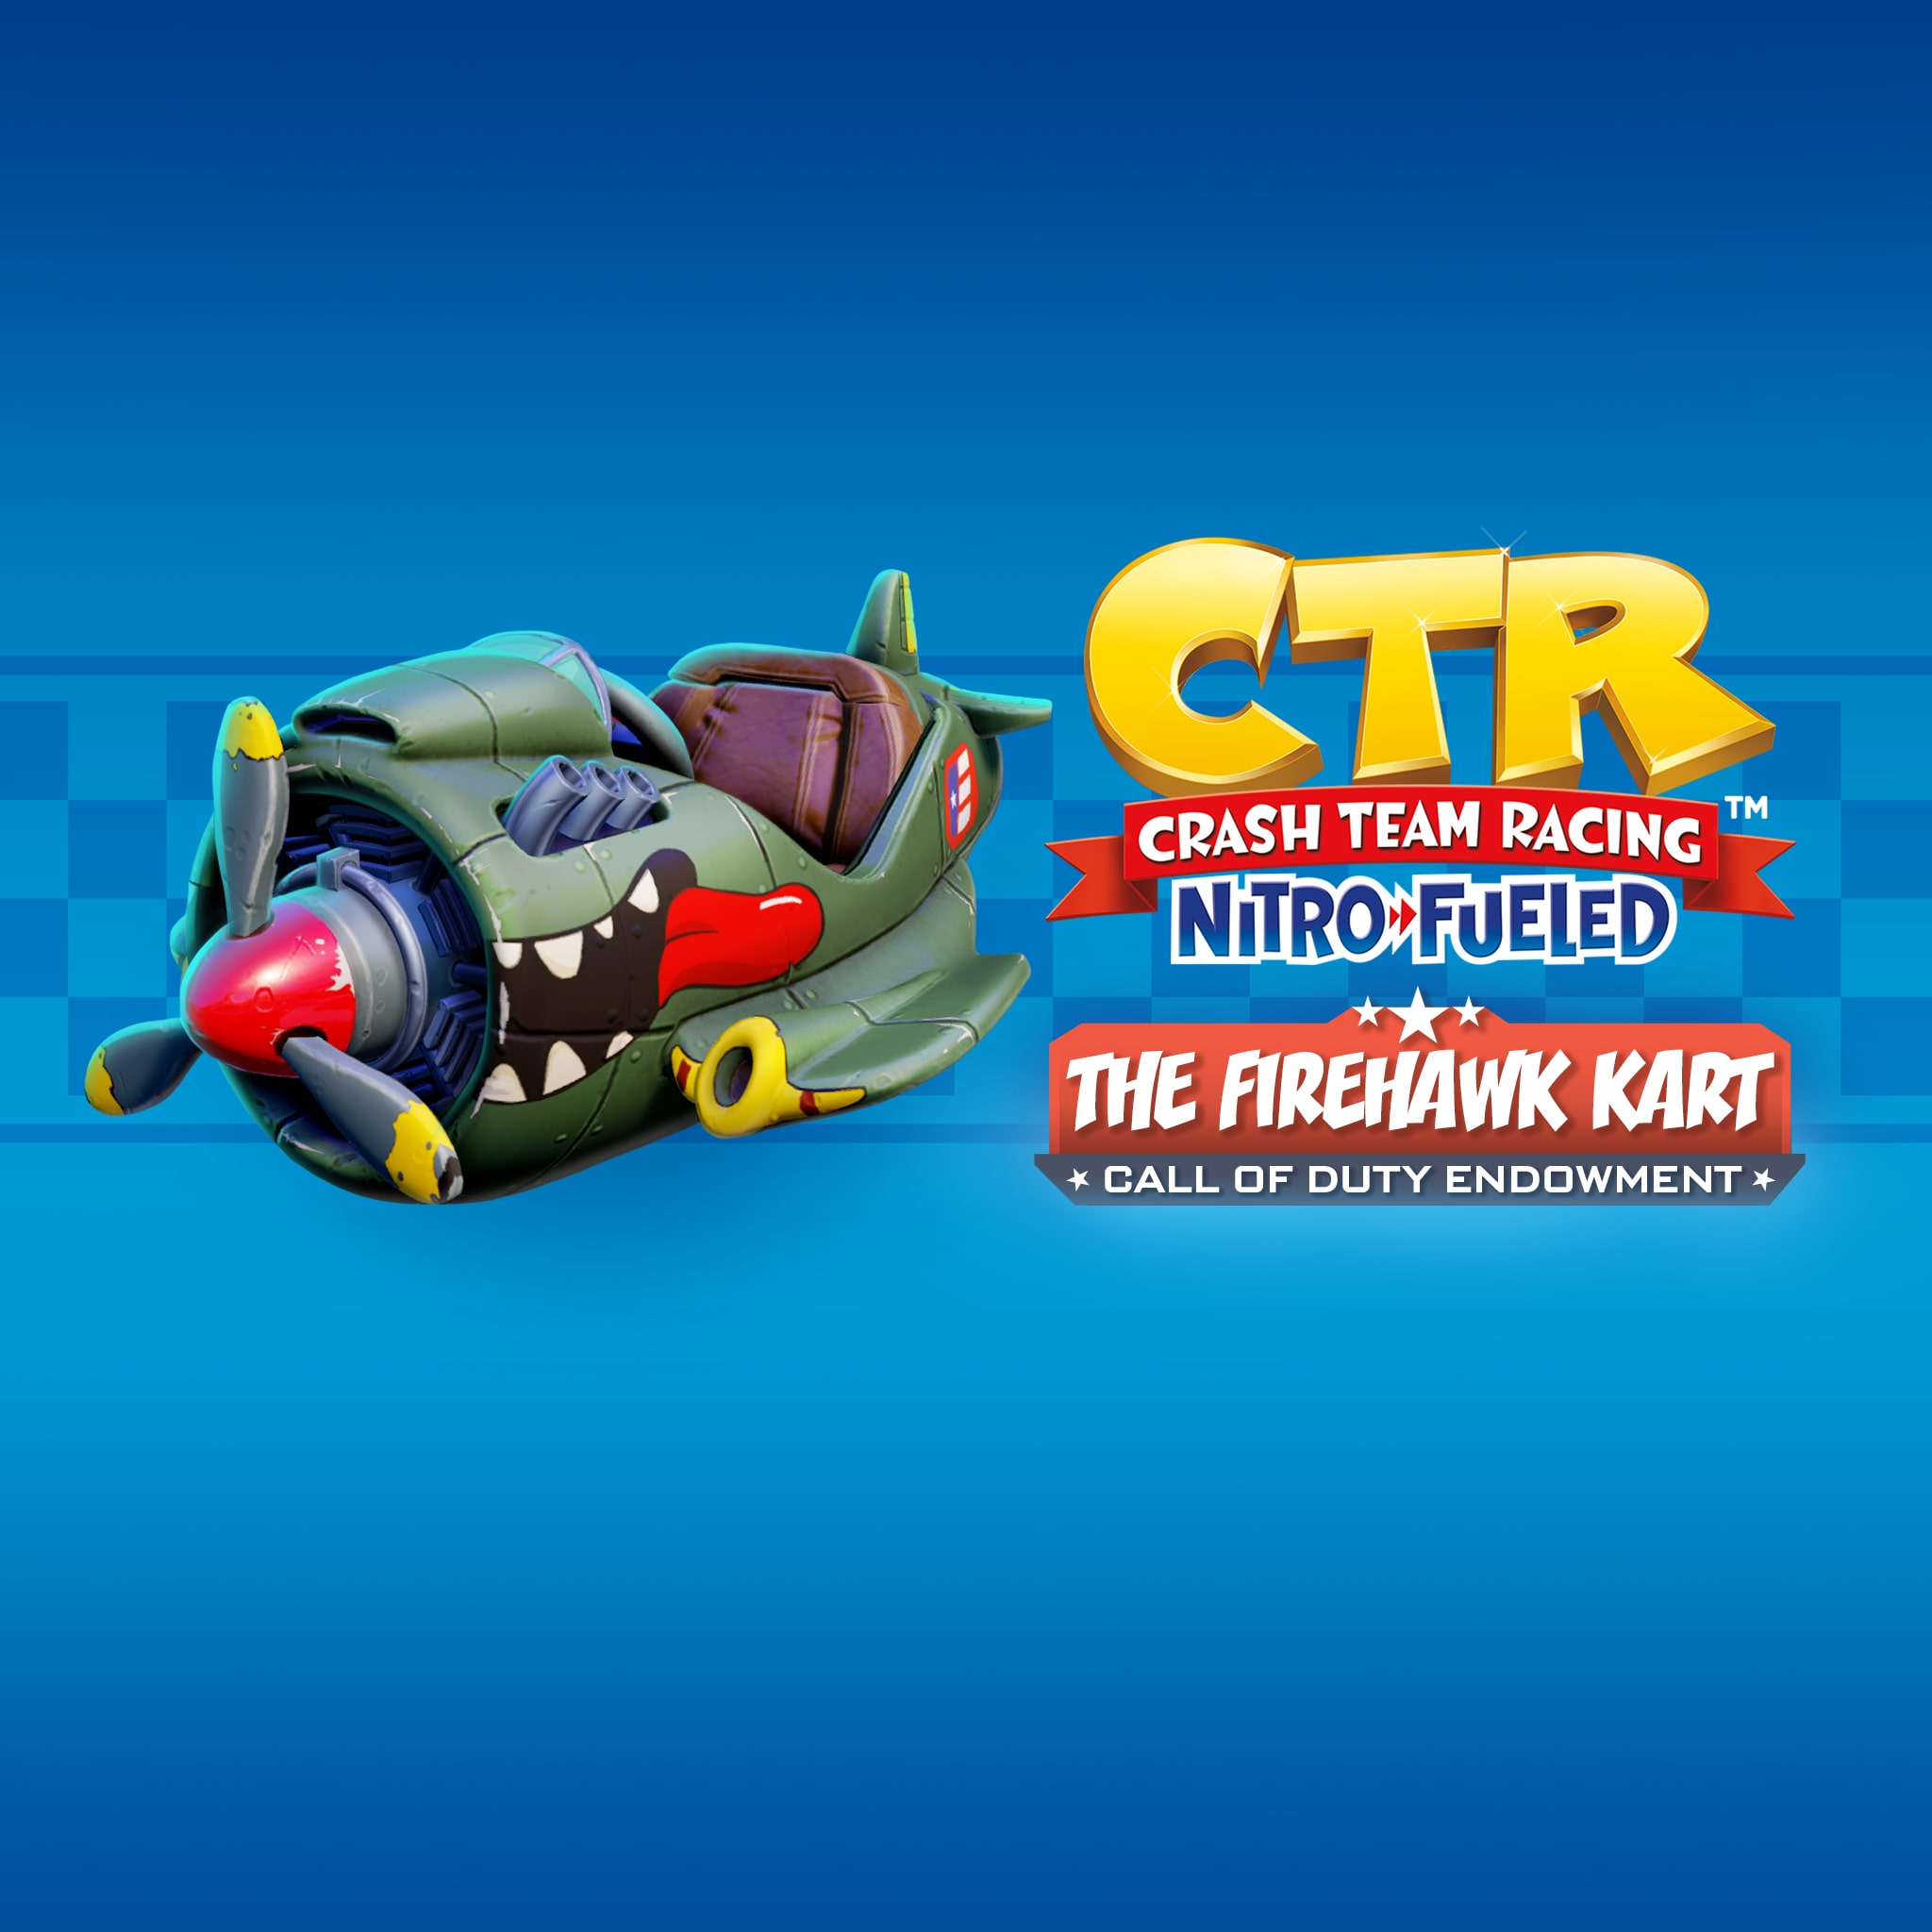 Crash™ Racing Nitro-Fueled - Firehawk Kart